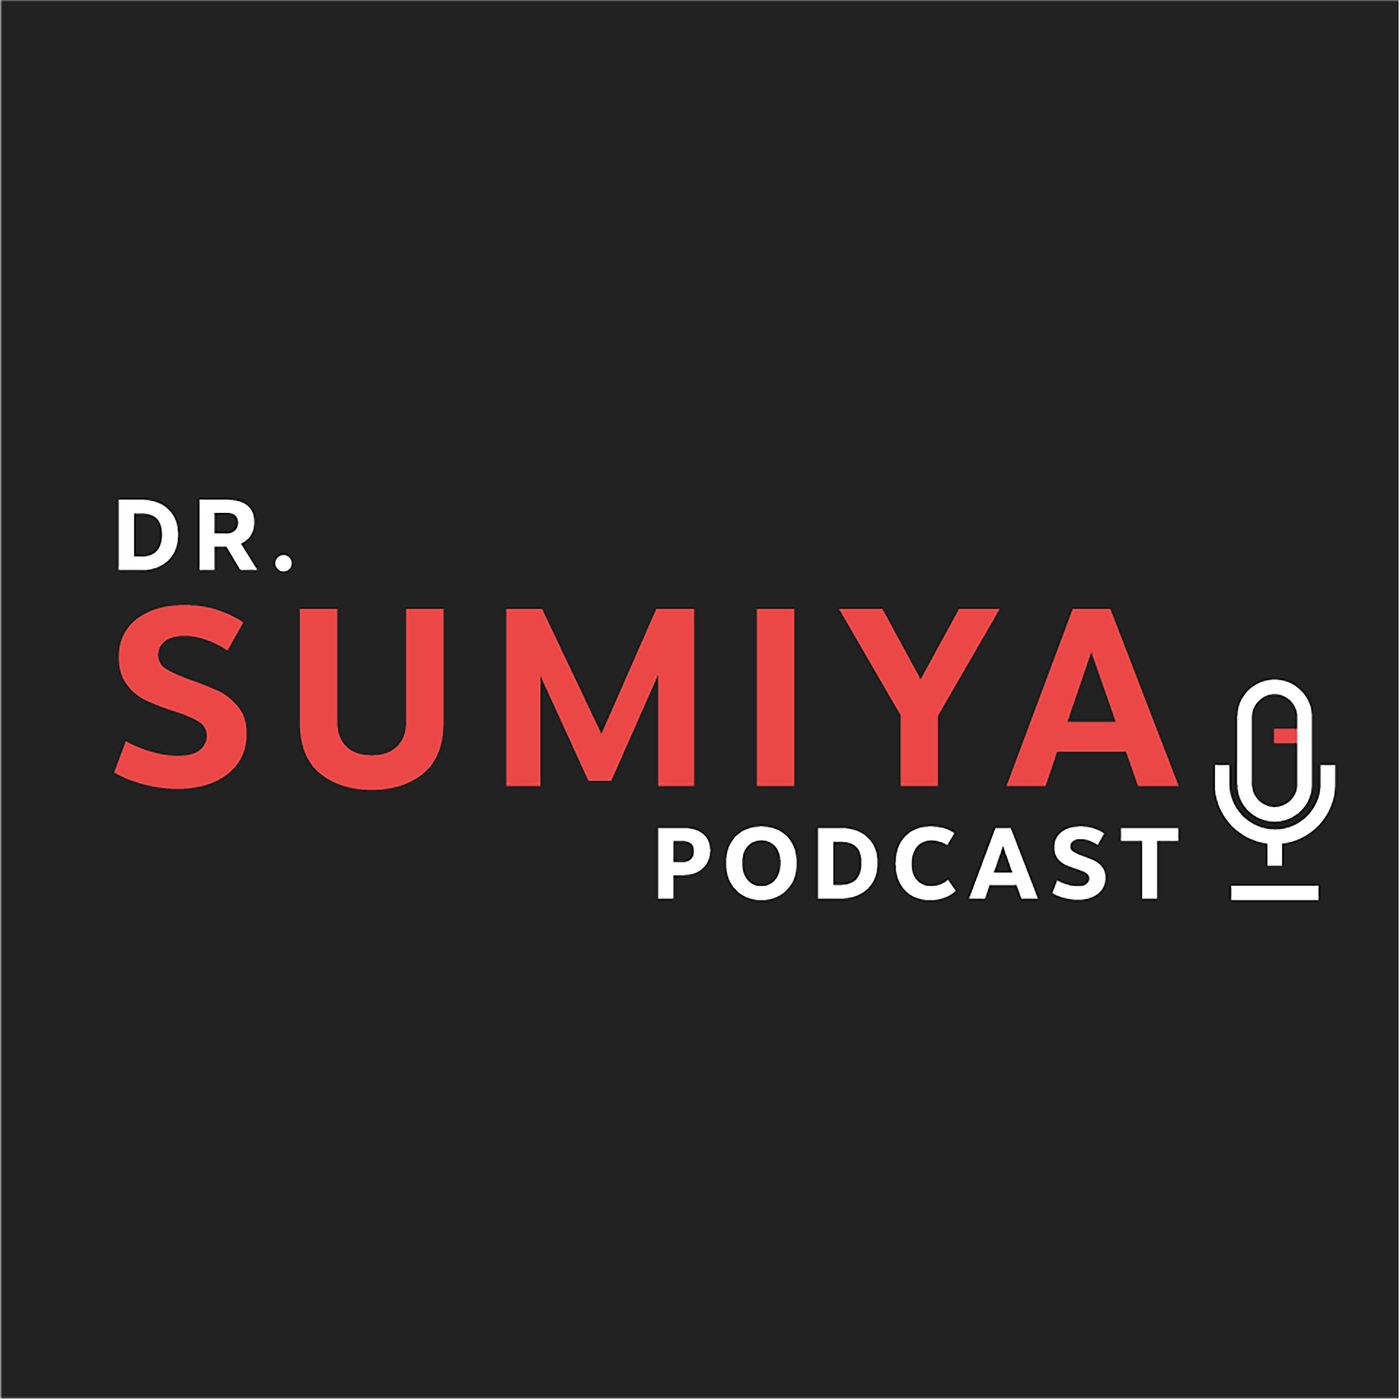 Unsick podcast #31. COVID19 вирусийн вакцины талаарх эрүүл мэндийн боловсролоо дээшлүүлье